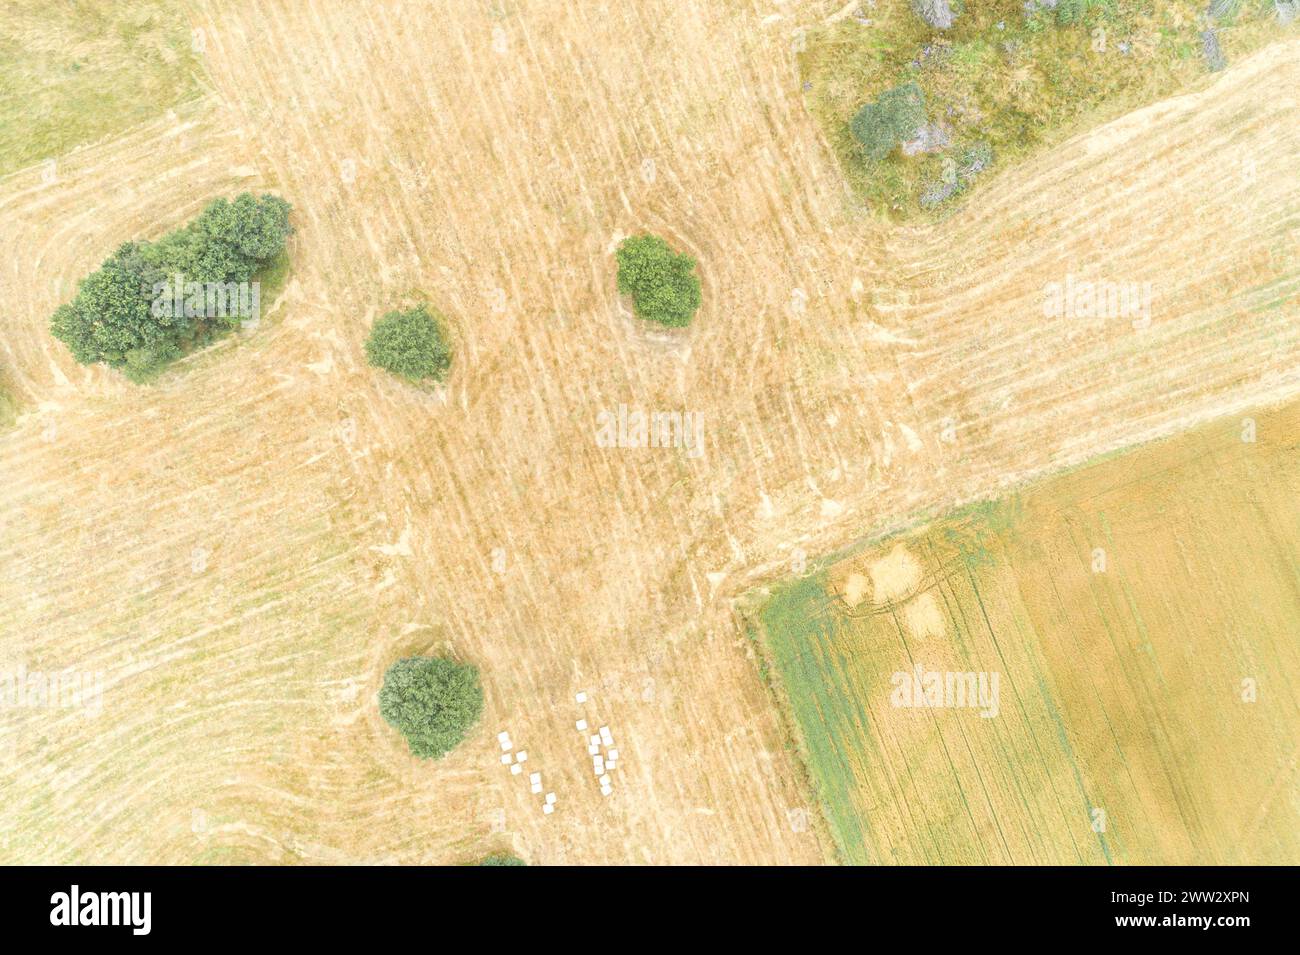 vista aerea aerea aerea dei campi agricoli in estate, paesaggio rurale Foto Stock